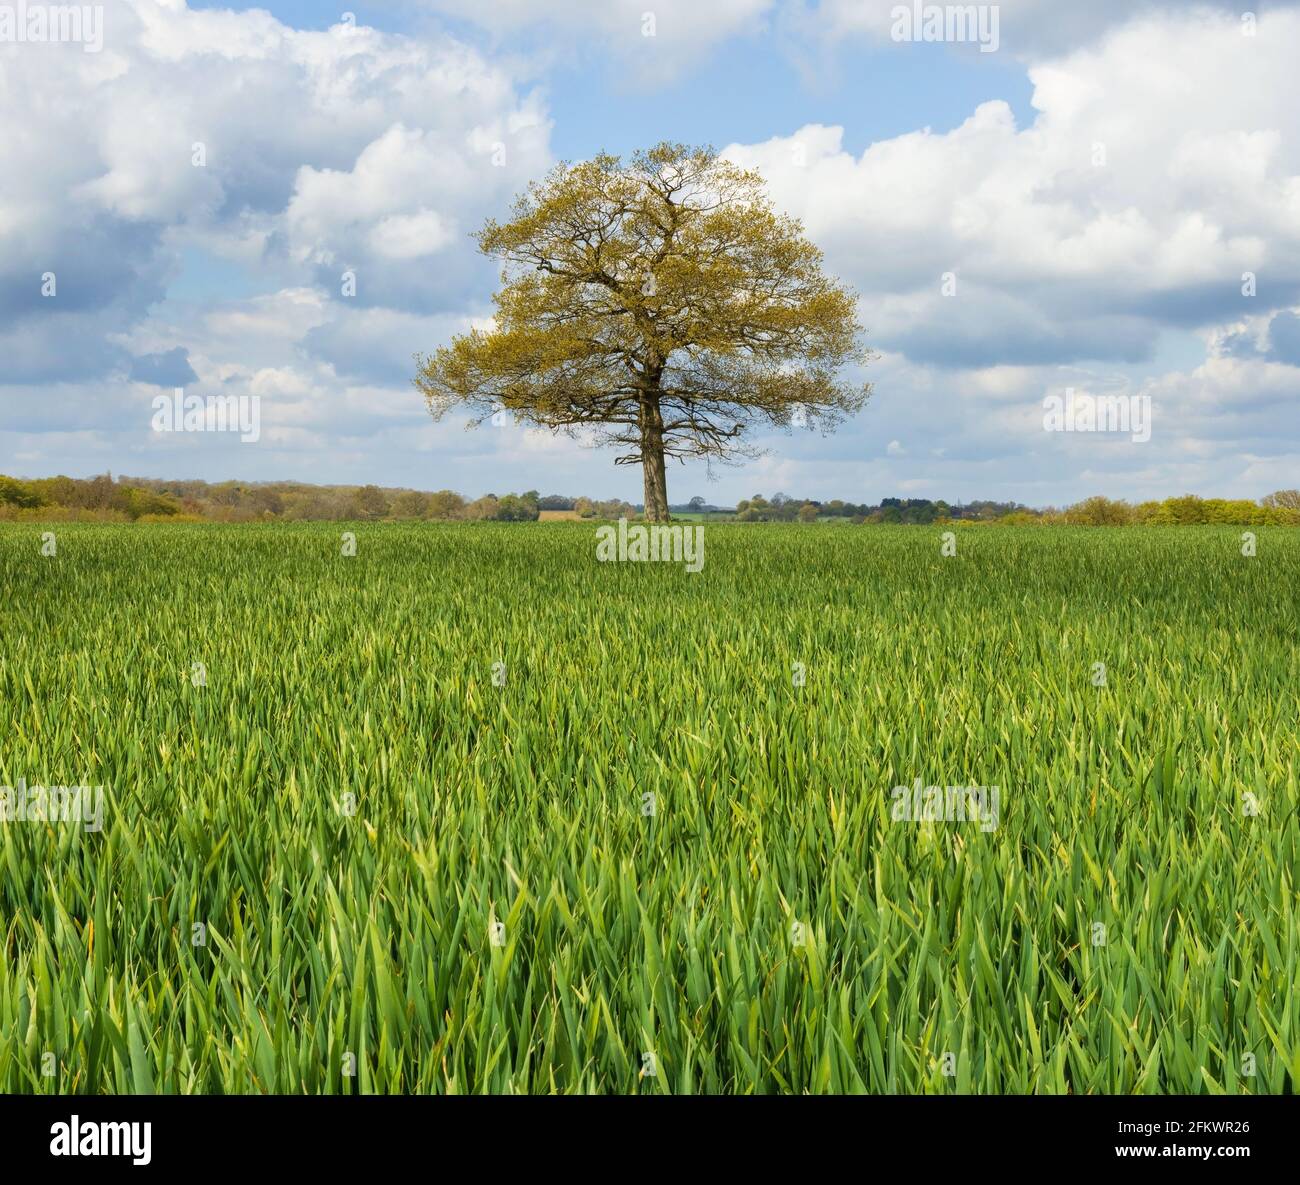 Giovani germogli verdi di grano in primo piano, con un quercia solitaria sullo sfondo. Hertfordshire. REGNO UNITO Foto Stock